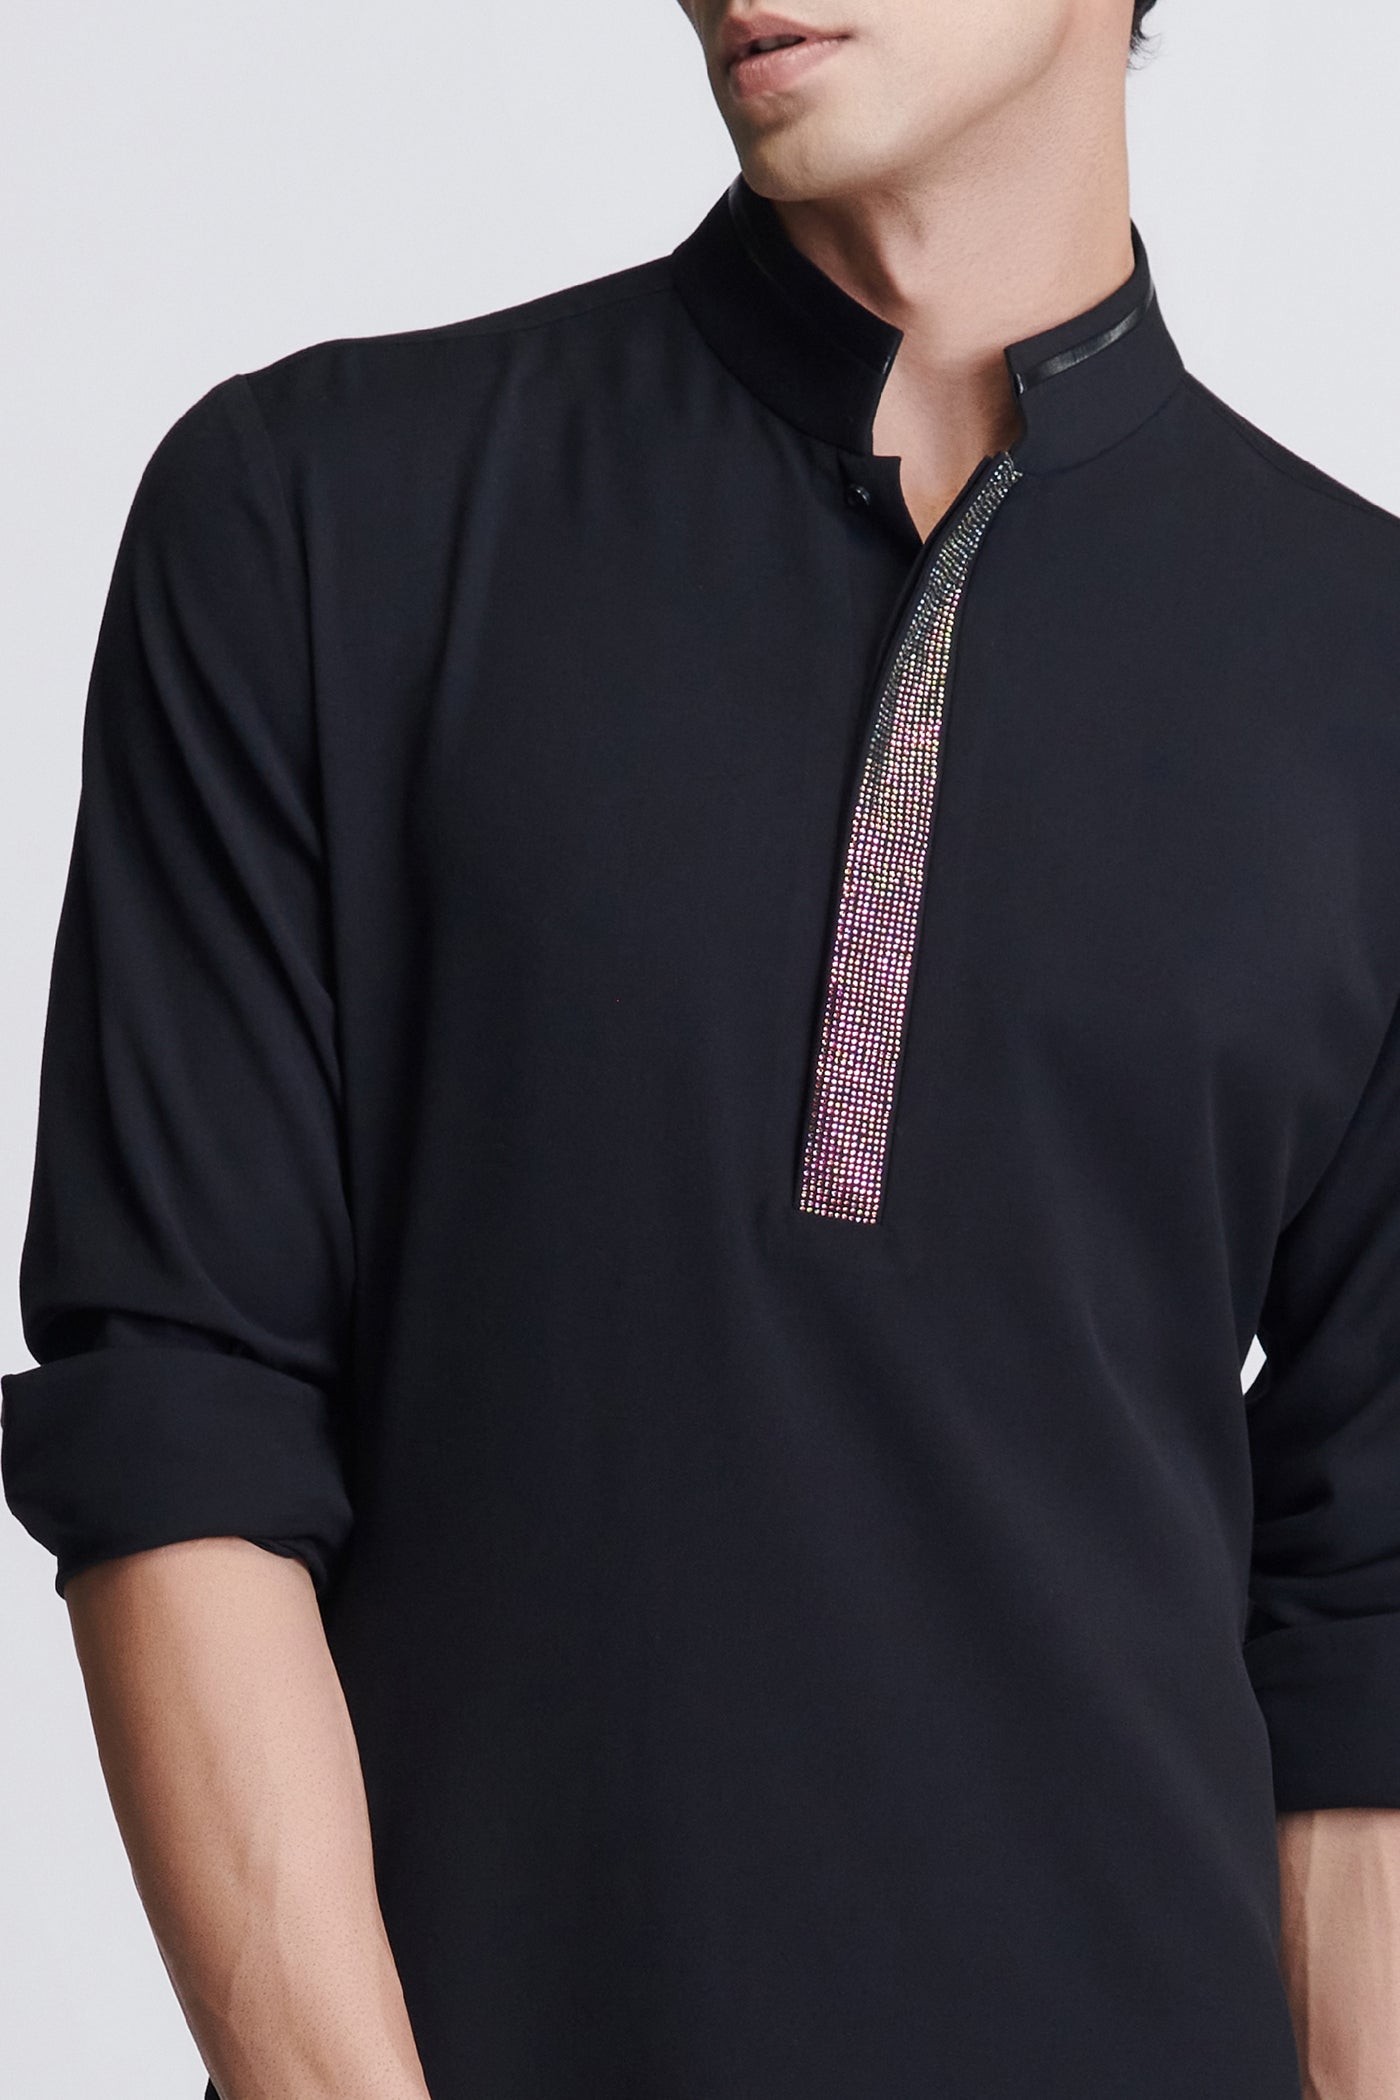 Shantanu & Nikhil Menswear Black Diamante Placket Kurta indian designer wear online shopping melange singapore